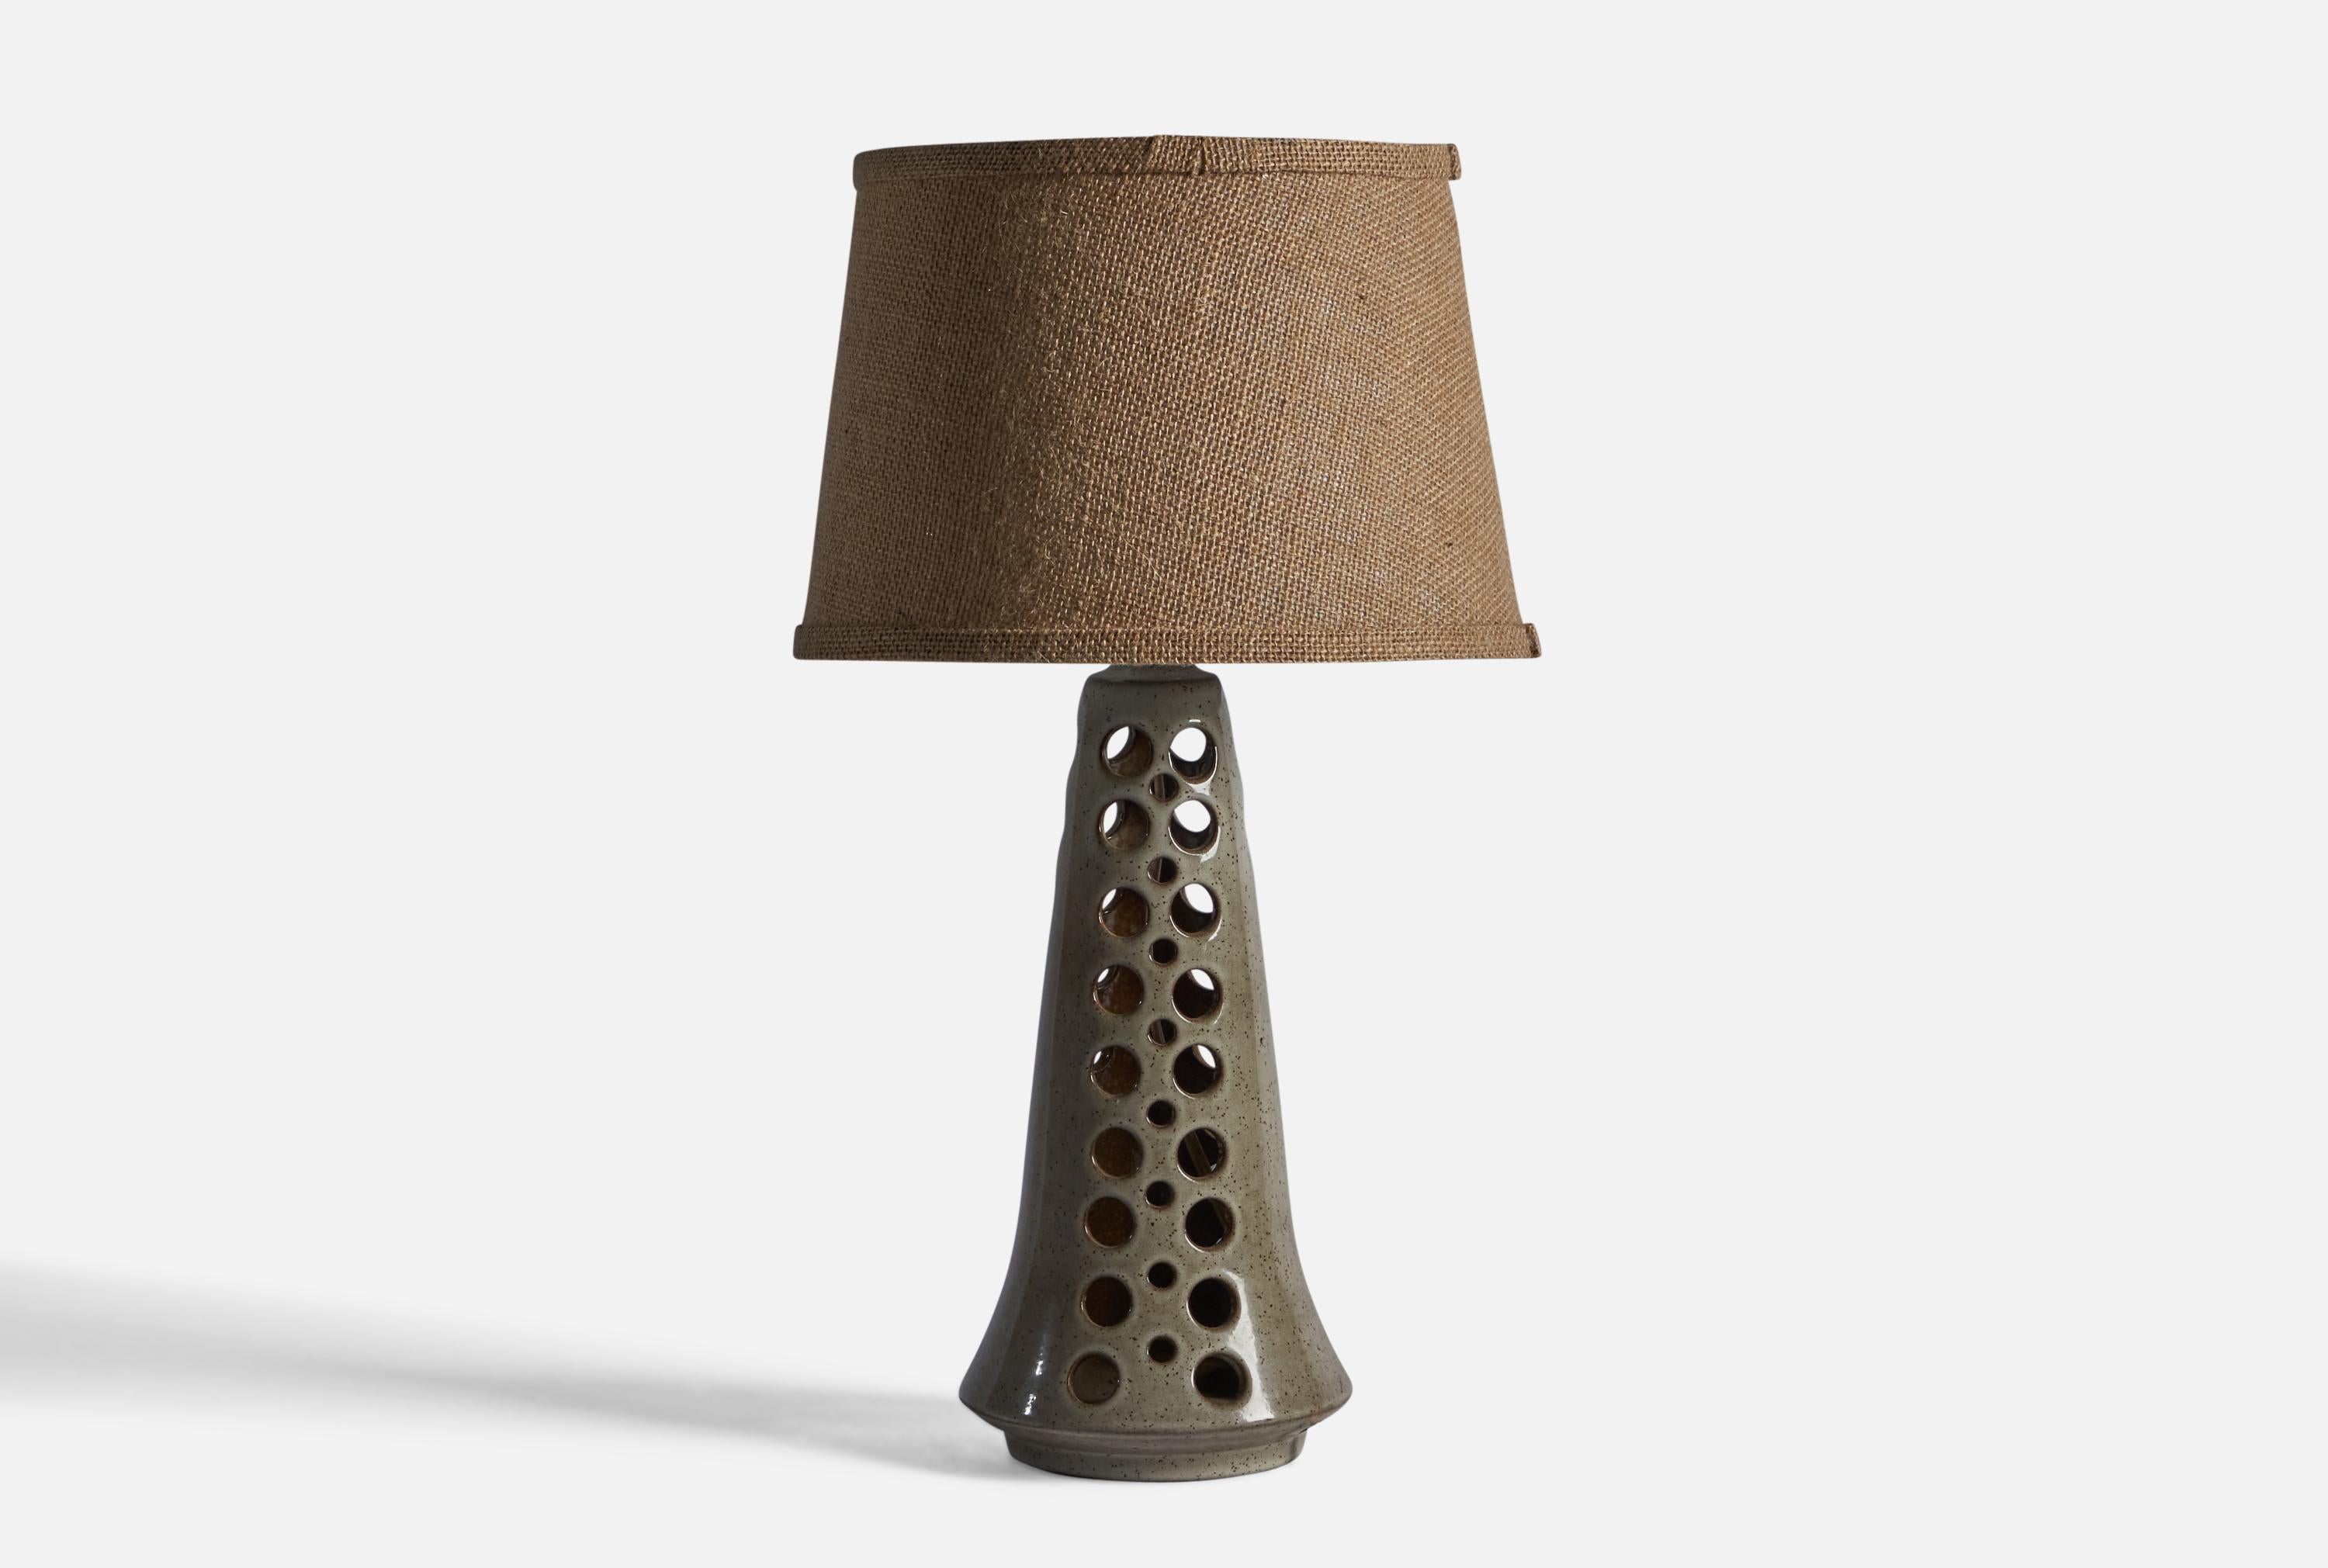 Lampe de table en grès perforé émaillé gris, conçue et produite par Michael Andersen, Bornholm, Danemark, c.C. 1960.

Dimensions de la lampe (pouces) : 14.75